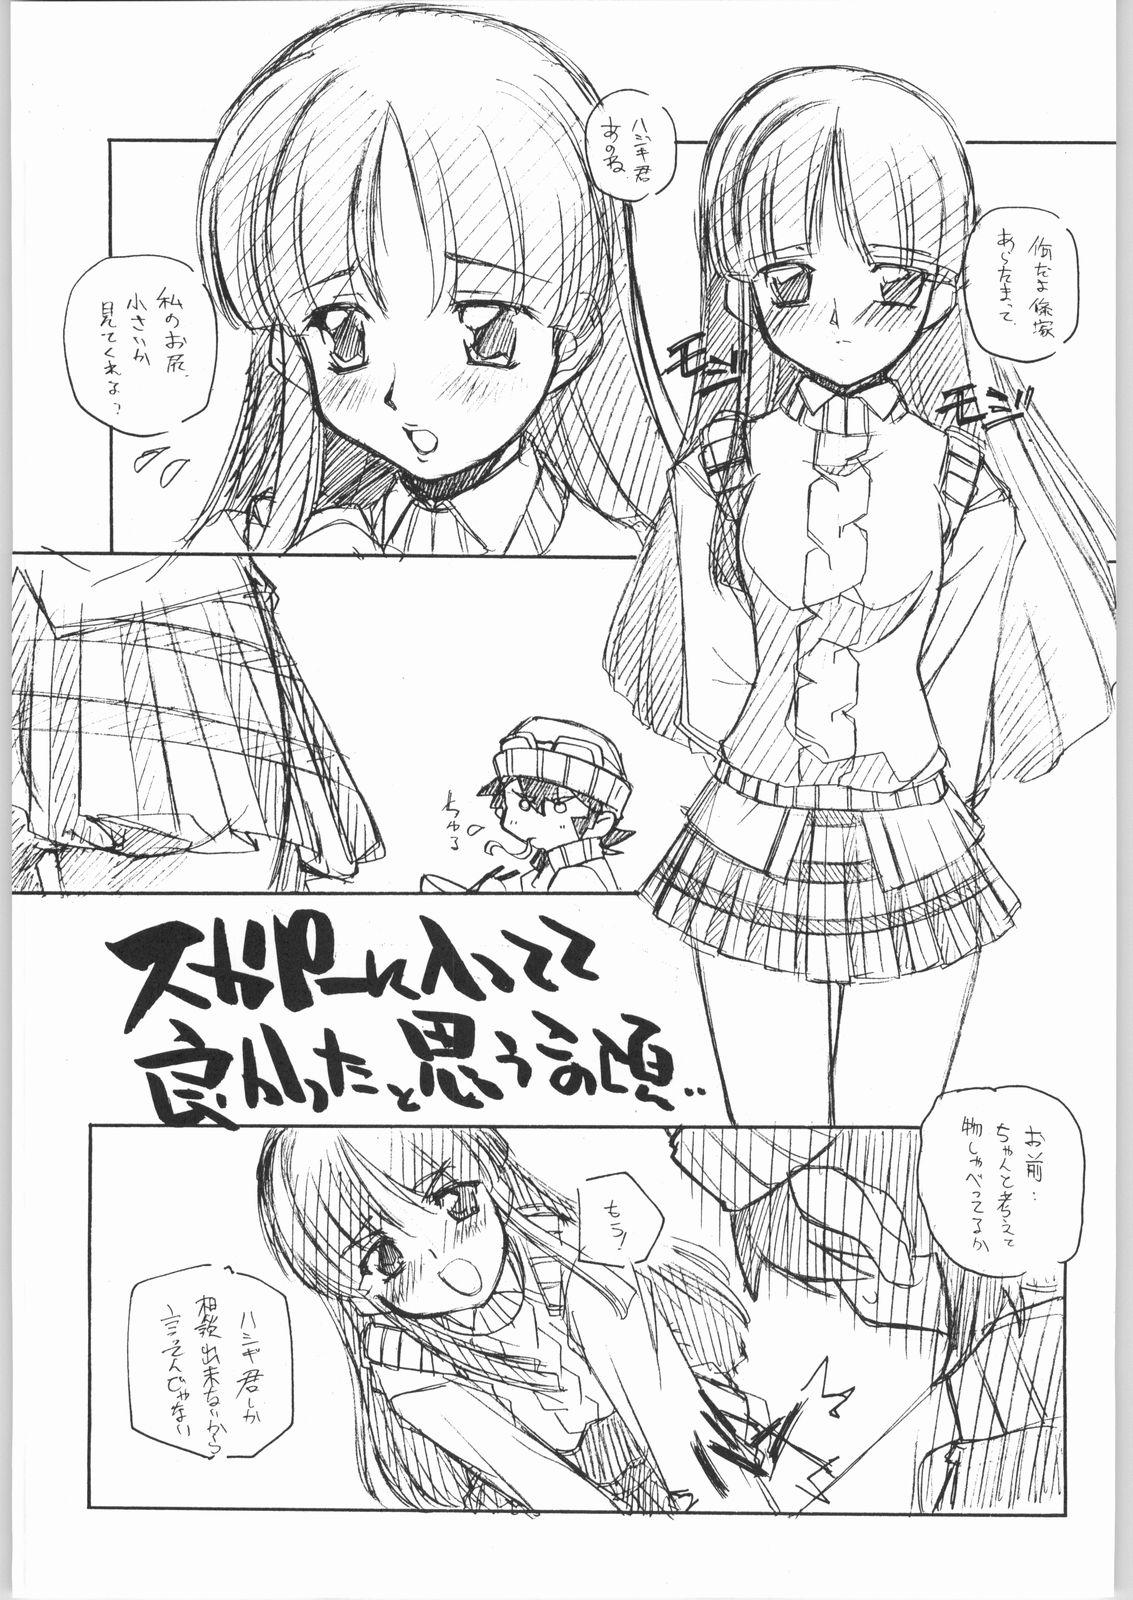 Tiny Tits Suki-Suki - Sakura taisen Xenosaga Ashita no nadja Gad guard Bdsm - Page 4